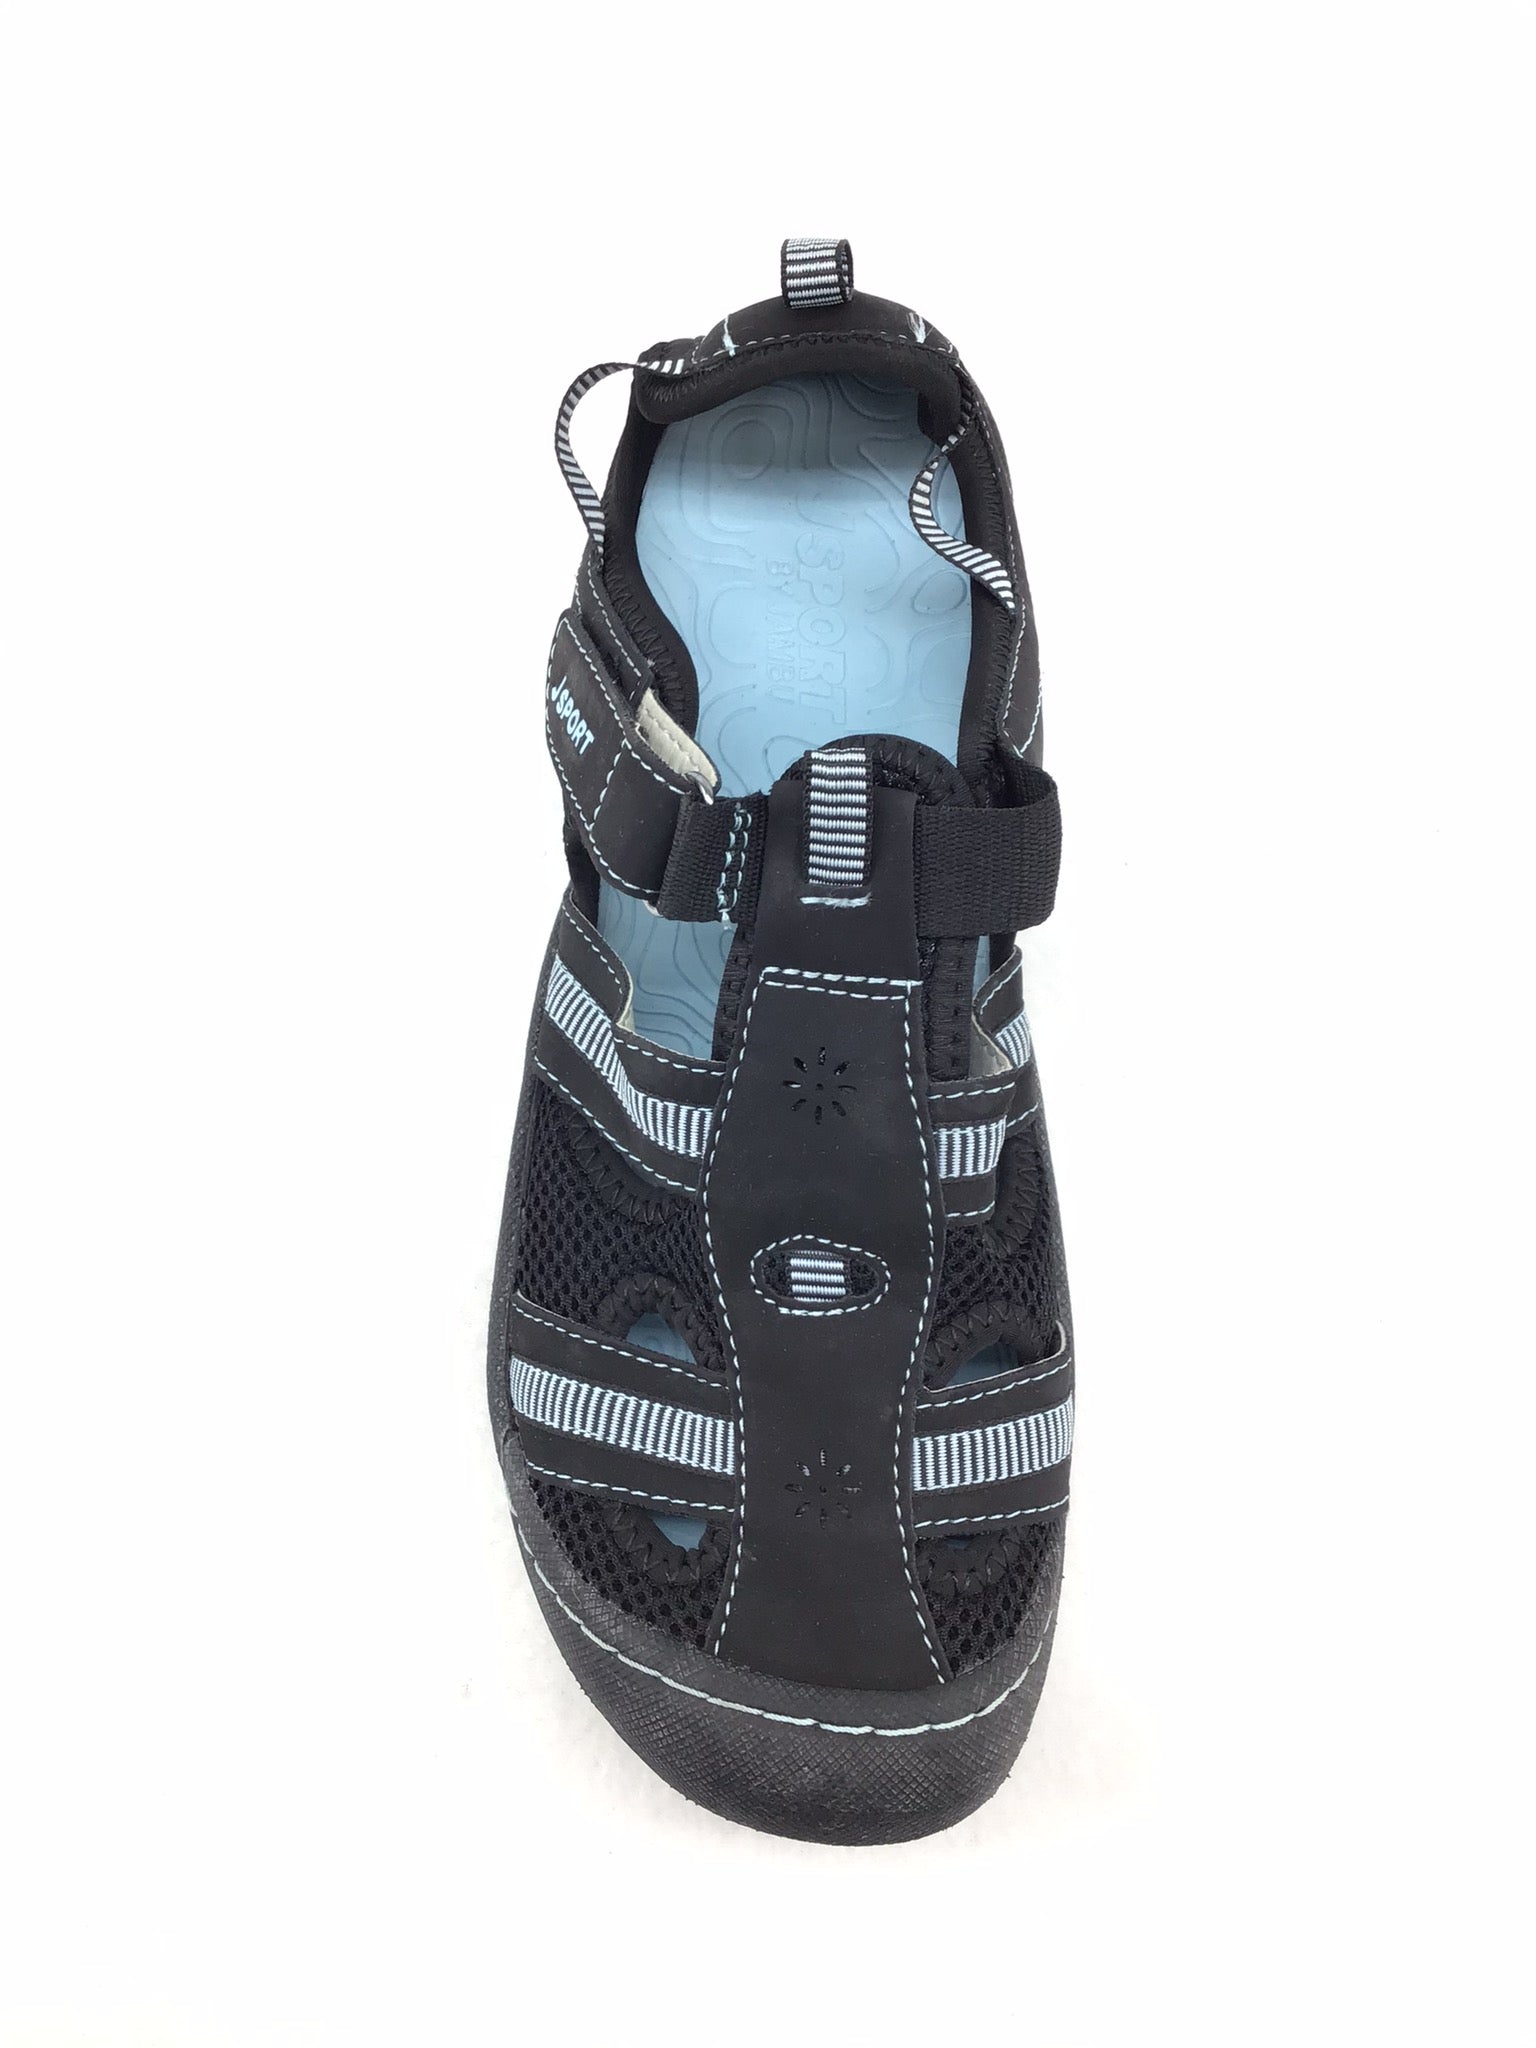 J Sport by Jambu Regatta Sandals Size 8.5M